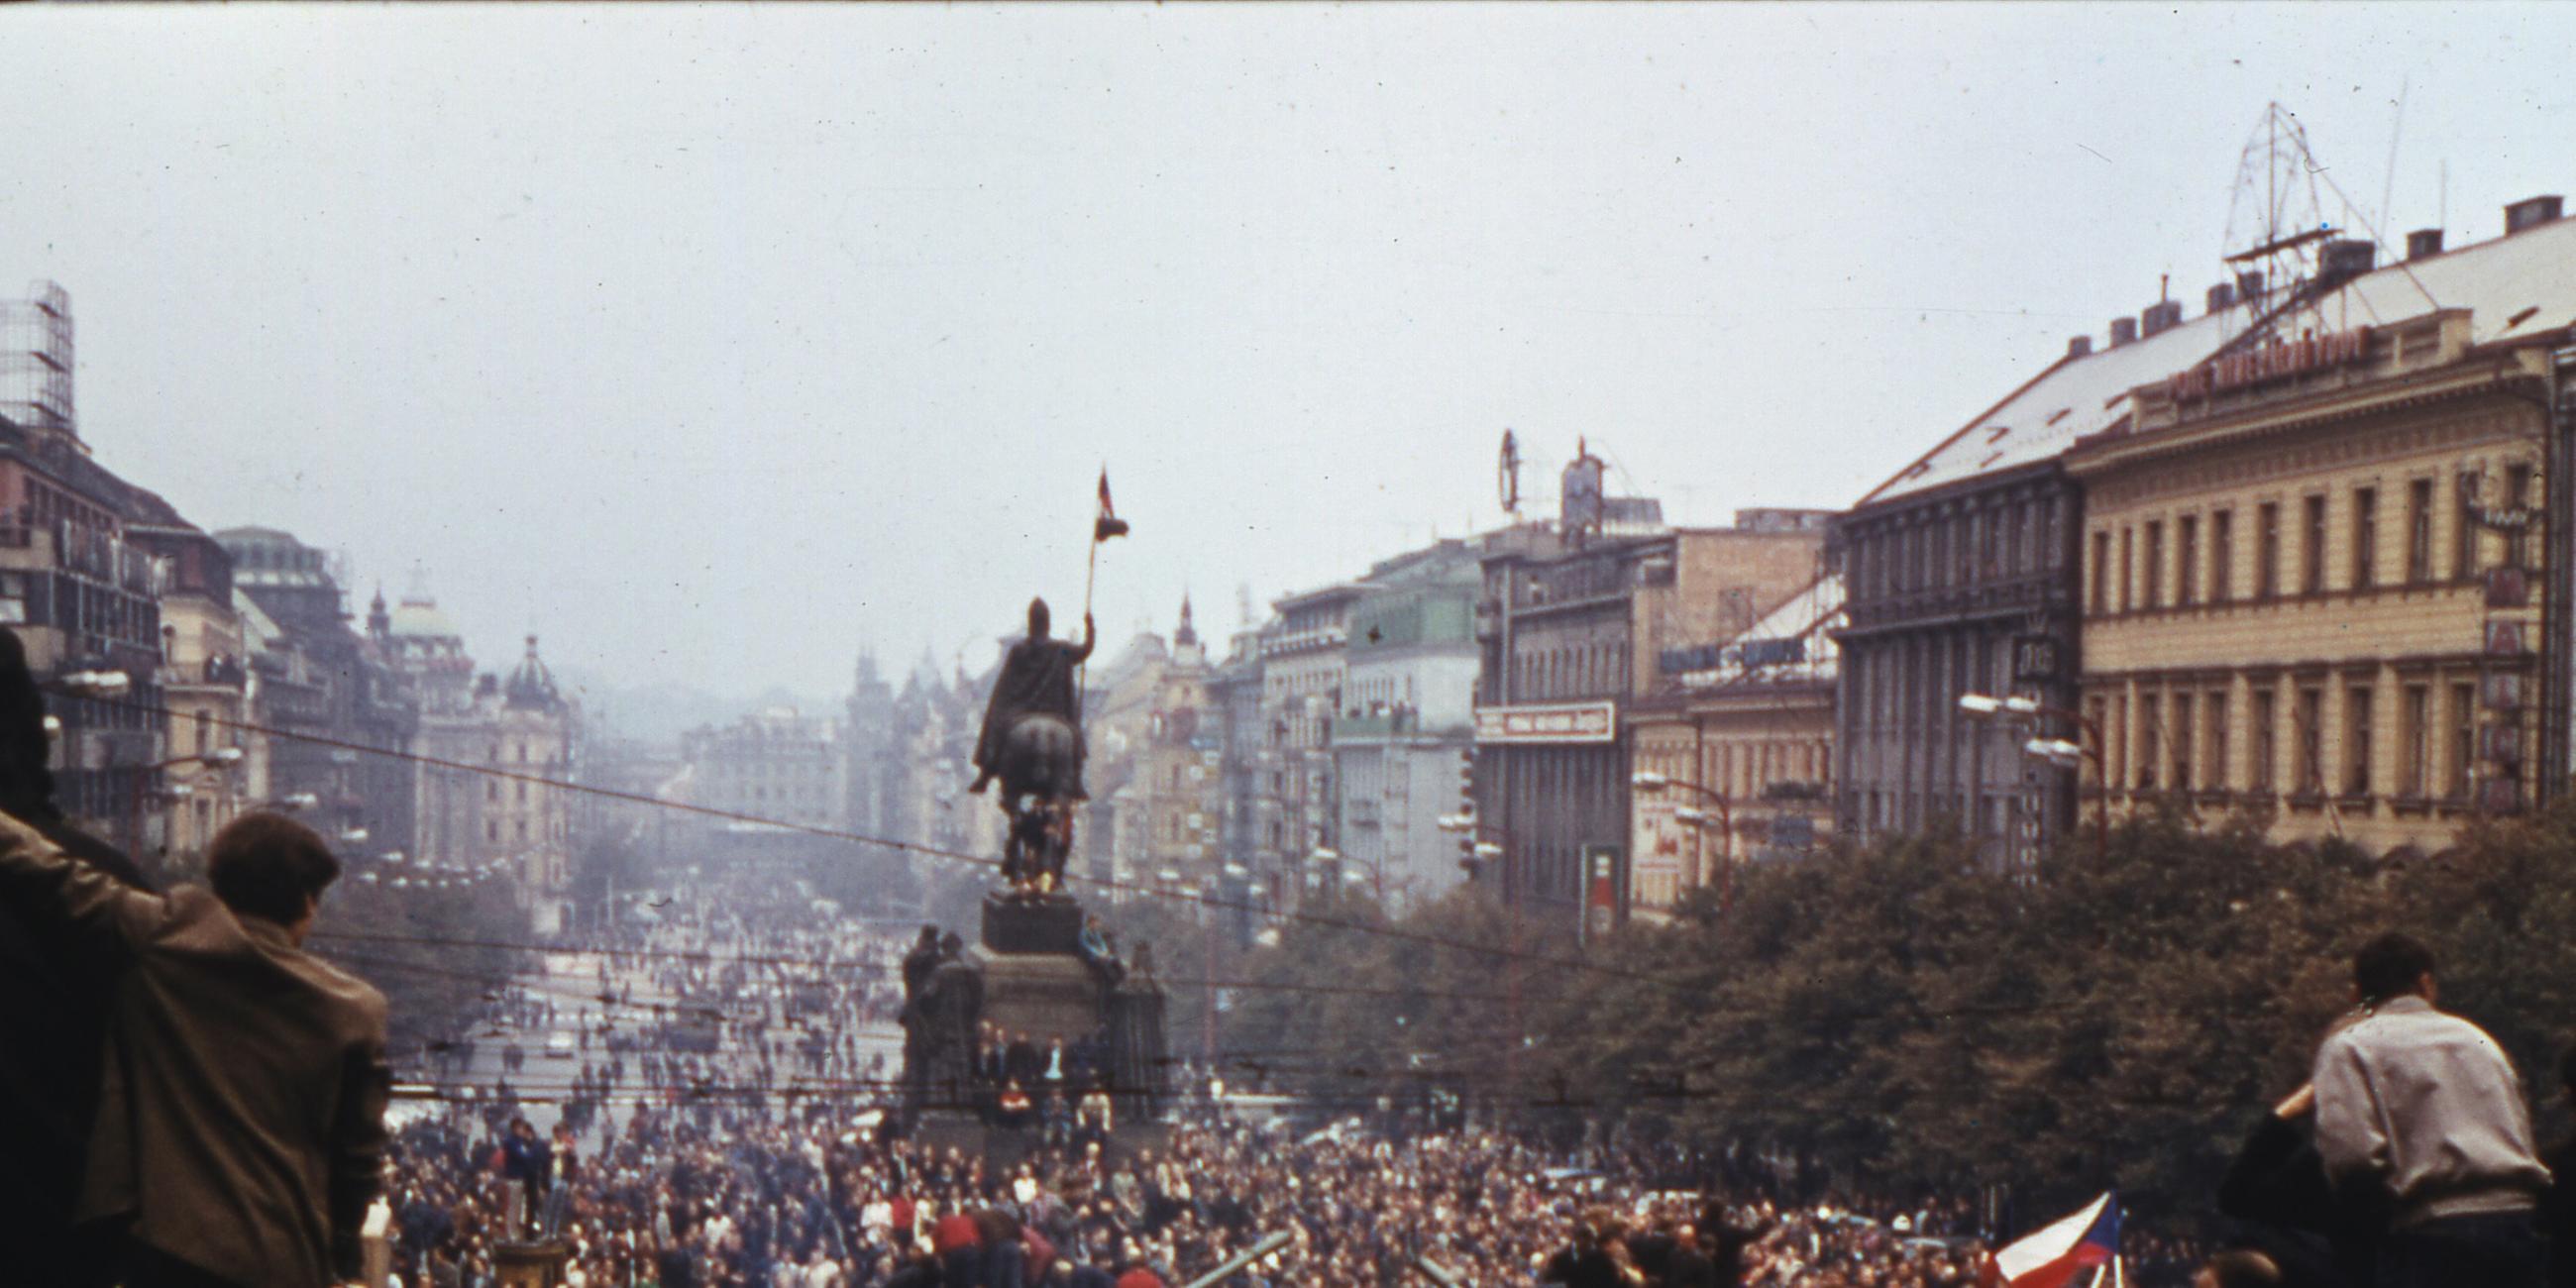 20. August: Der Prager Frühling wird gewaltsam beendet. Truppen des Warschauer Pakts beginnen mit der Besetzung der Tschechoslowakei. 